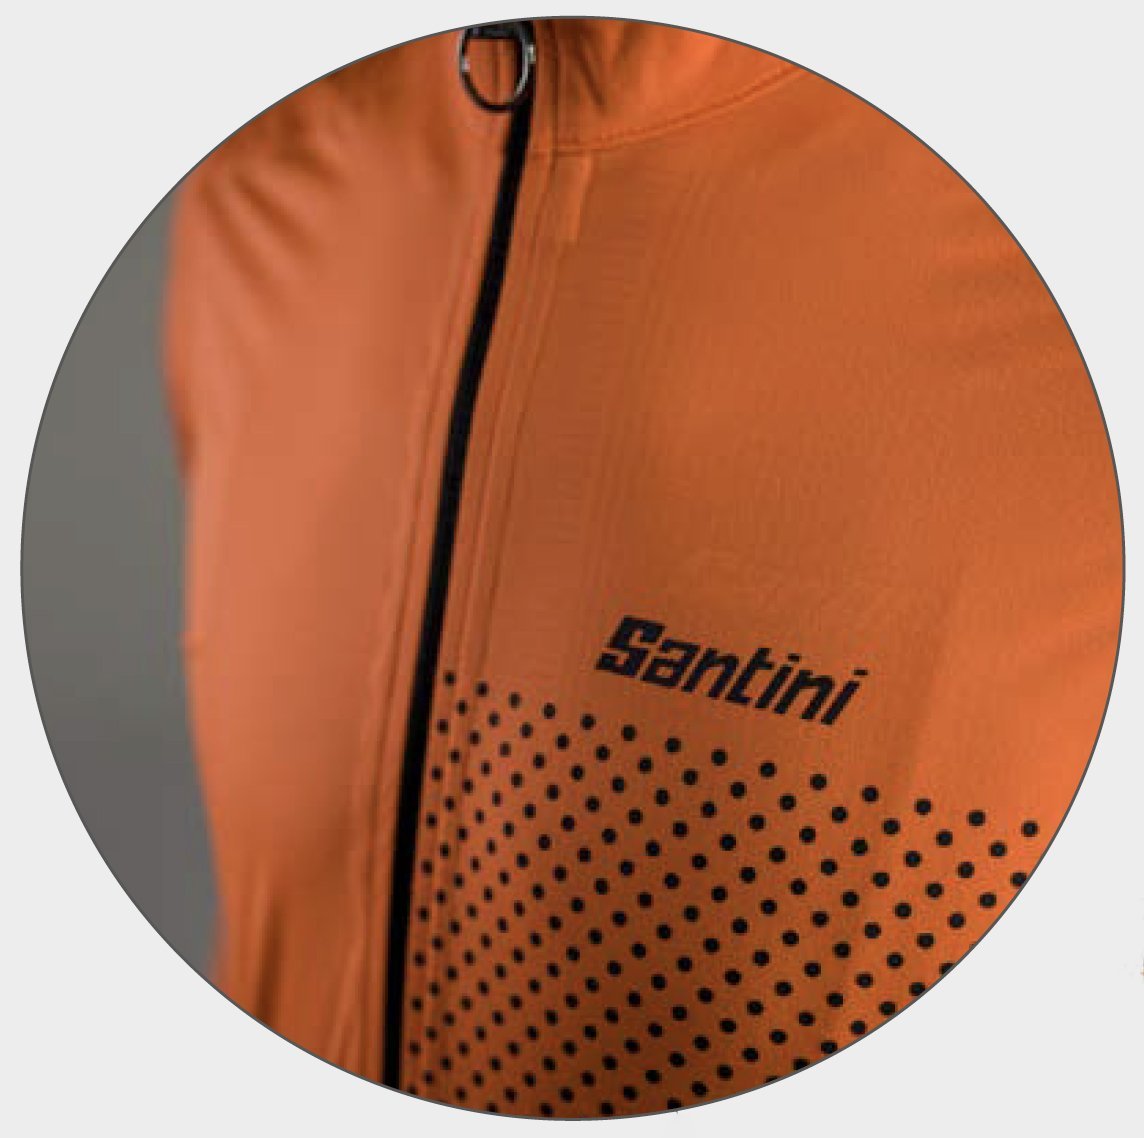 Santini Guard Nimbus Rain Jacket (Flashy Orange)